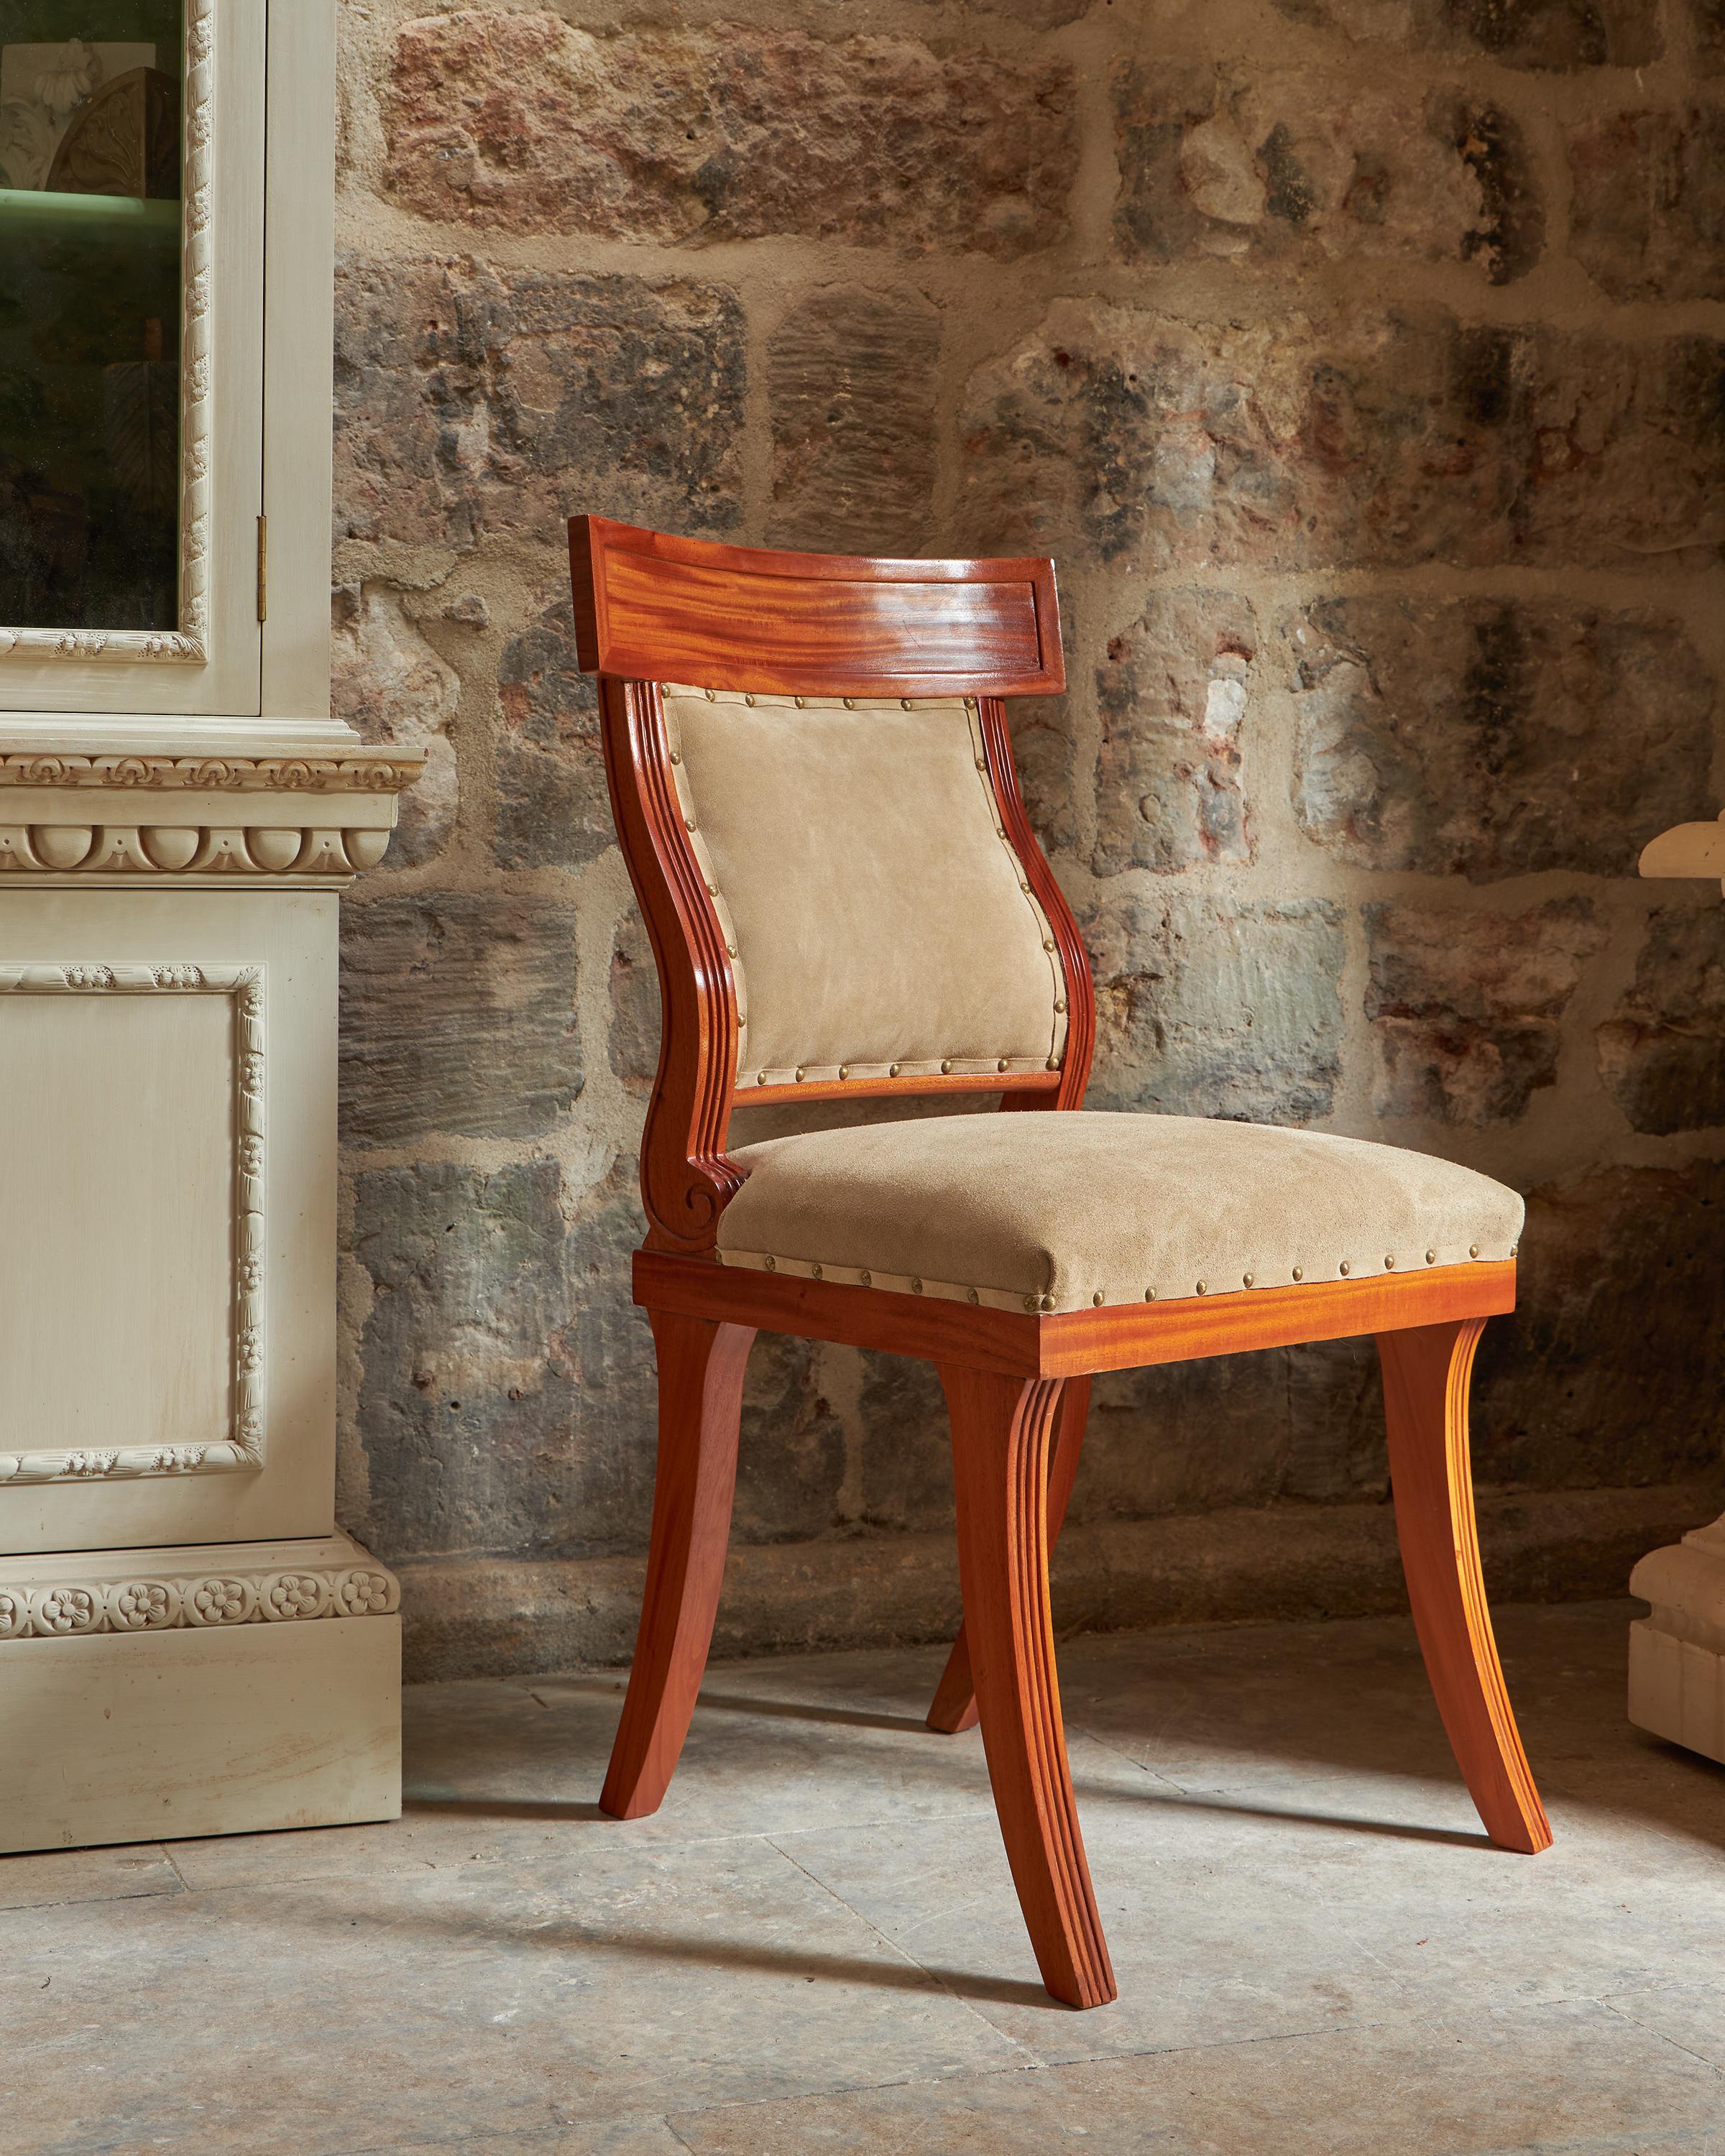 Das Design wurde von den Griechen im 5. Jahrhundert v. Chr. entwickelt. Das Design wurde dann in der englischen Regency-Periode wieder aufgegriffen. Der Stuhl ist aus Sono-Holz gefertigt, das dem Palisanderholz ähnelt. Mit dem vom Kunden gewünschten